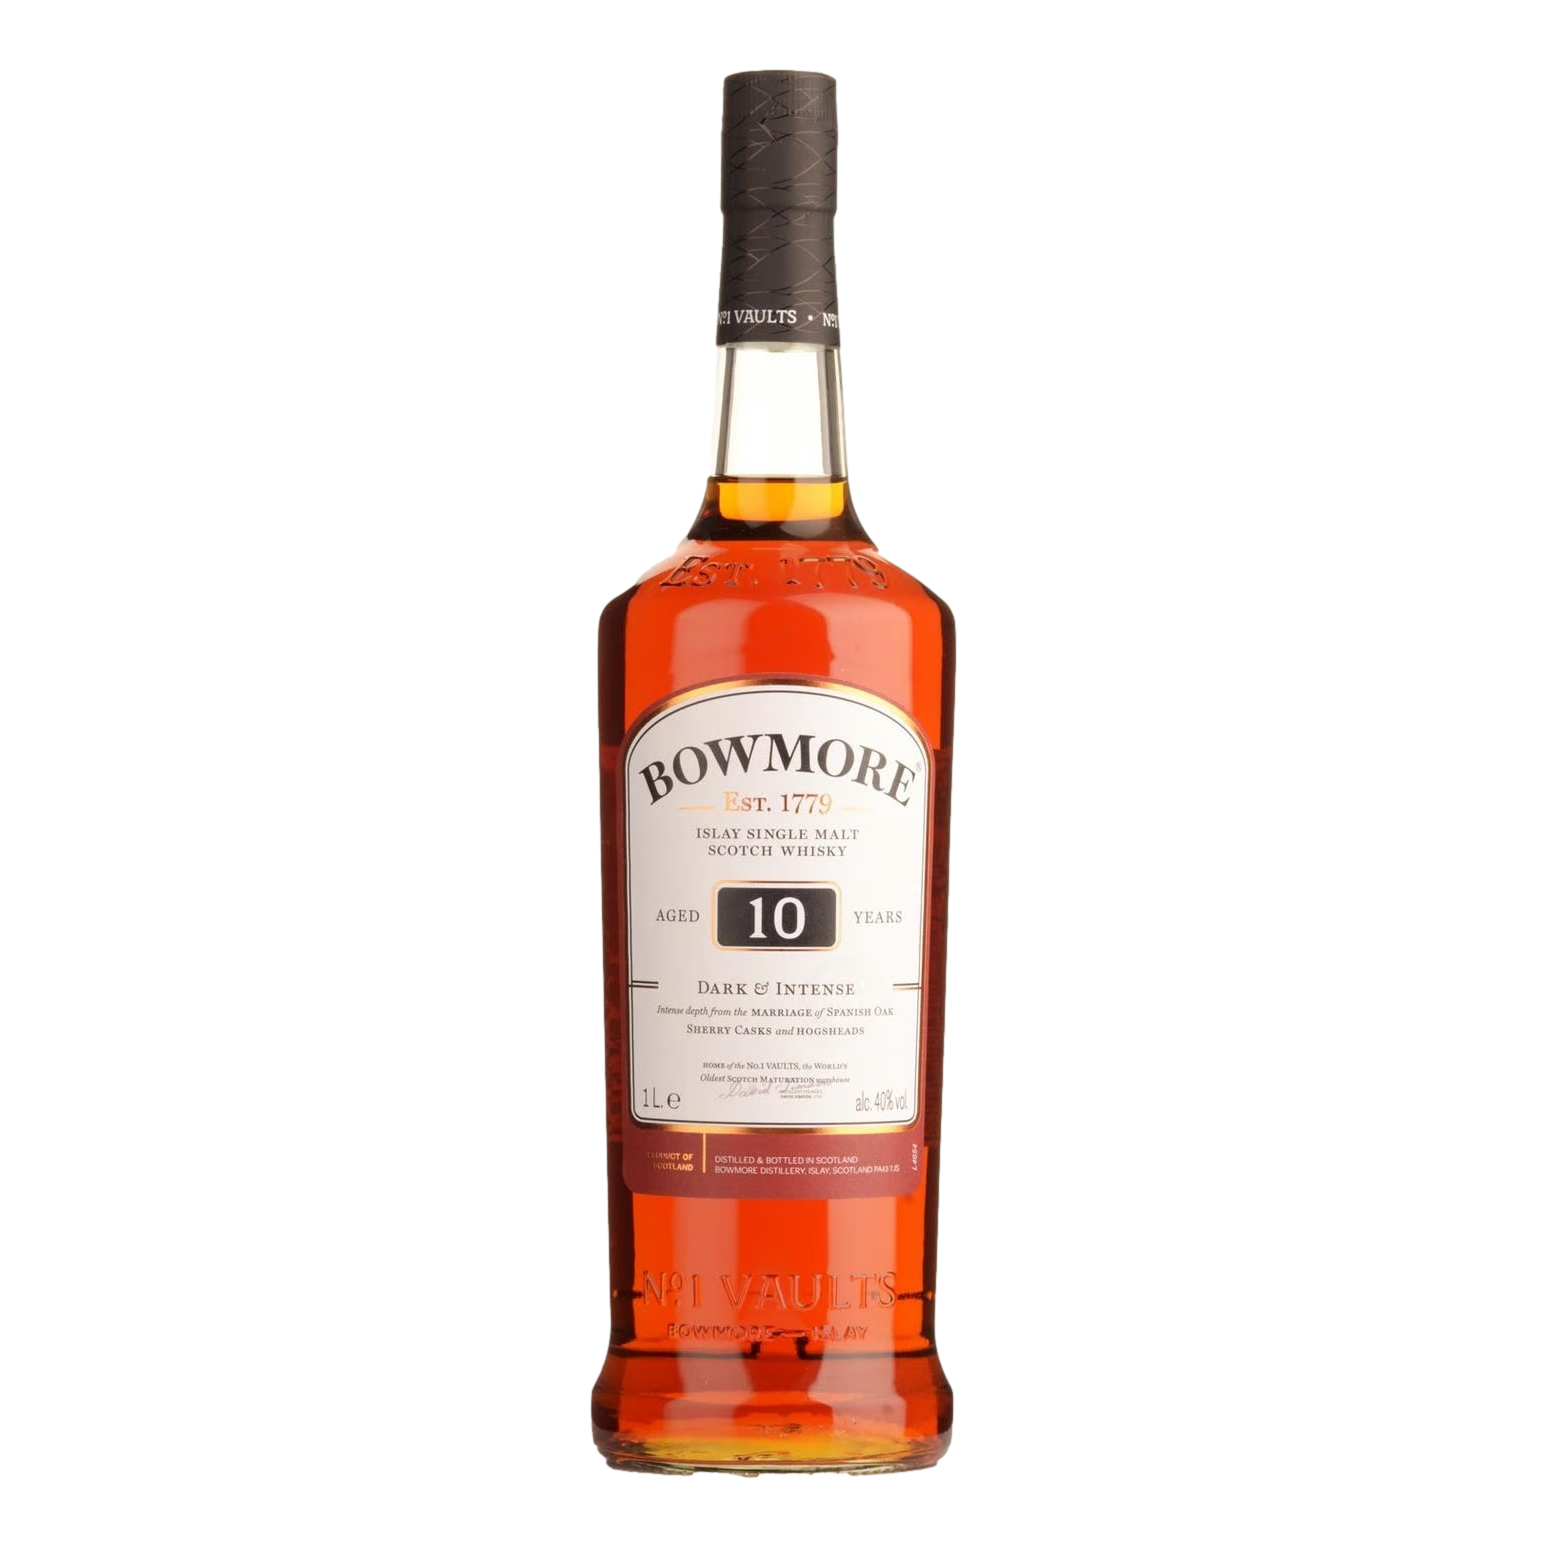 Bowmore Dark & Intense Single Malt Scotch Whisky 10YO 1L